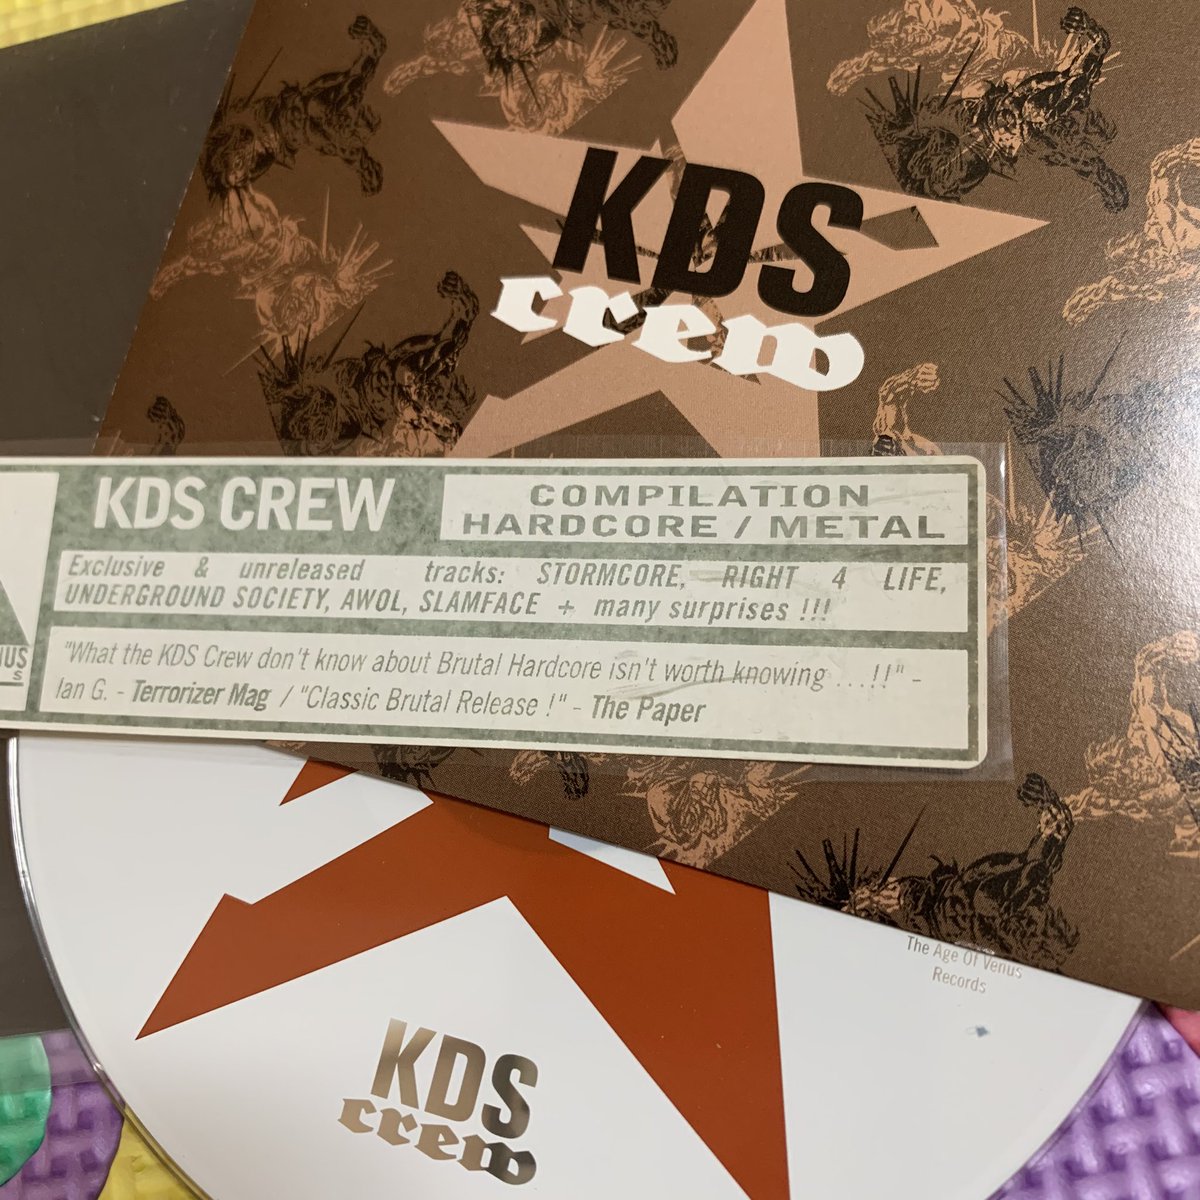 classic brutal release

#kdscrew
#frenchhardcore 

フランスKDS crewコンピ
これも名作💯💯💯💯💯💯💯

こちらは DIGDIGにもデッドストックで在庫あります、
AWOLは最高ですね、ホント。